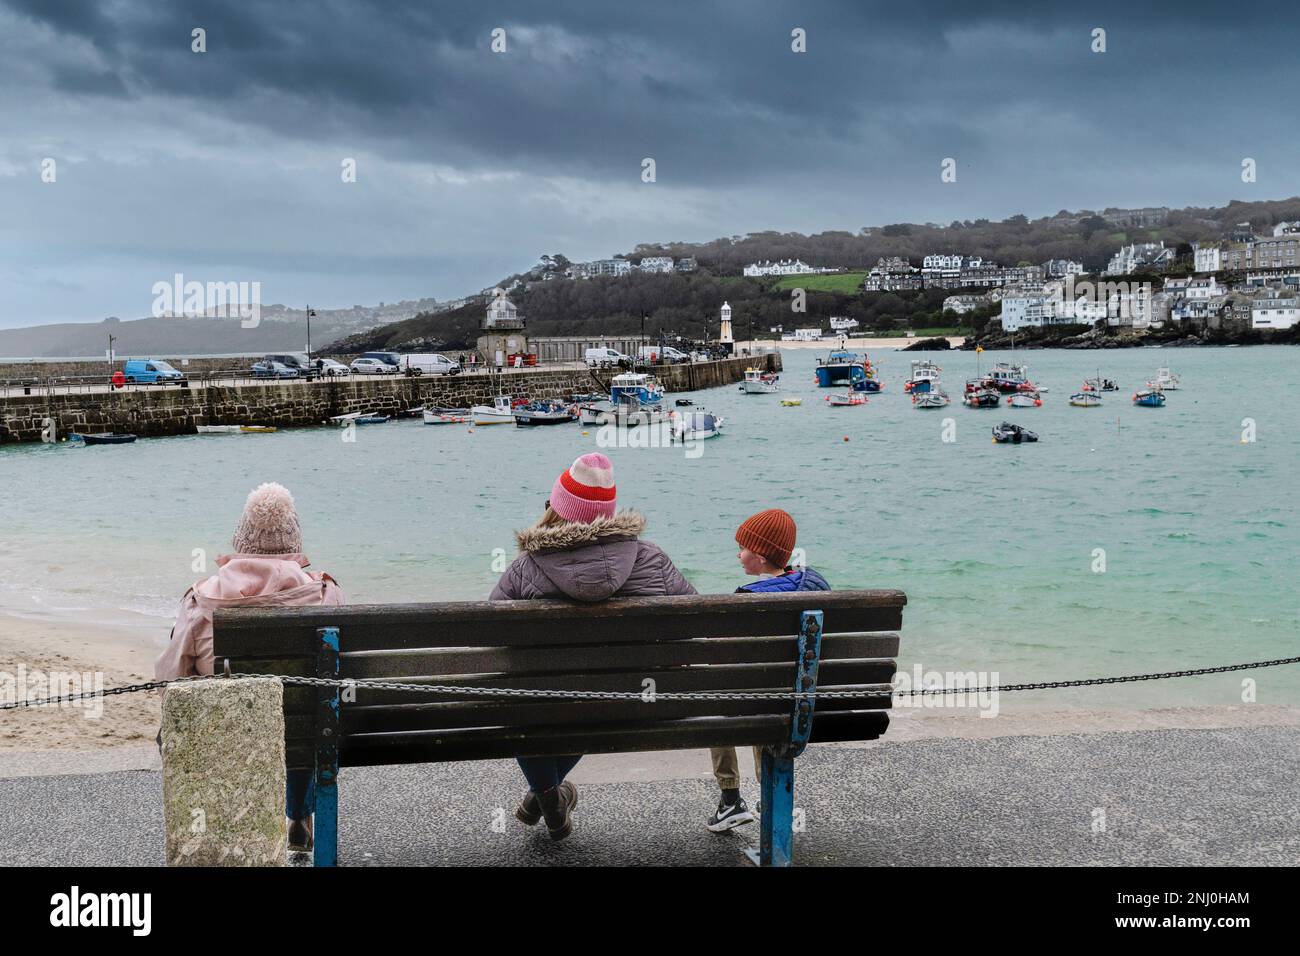 Wetter in Großbritannien. Besucher sitzen an einem regnerisch kalten, miserablen Tag auf einer Bank in der historischen Küstenstadt St. Ives in Cornwall, England, Großbritannien. Stockfoto